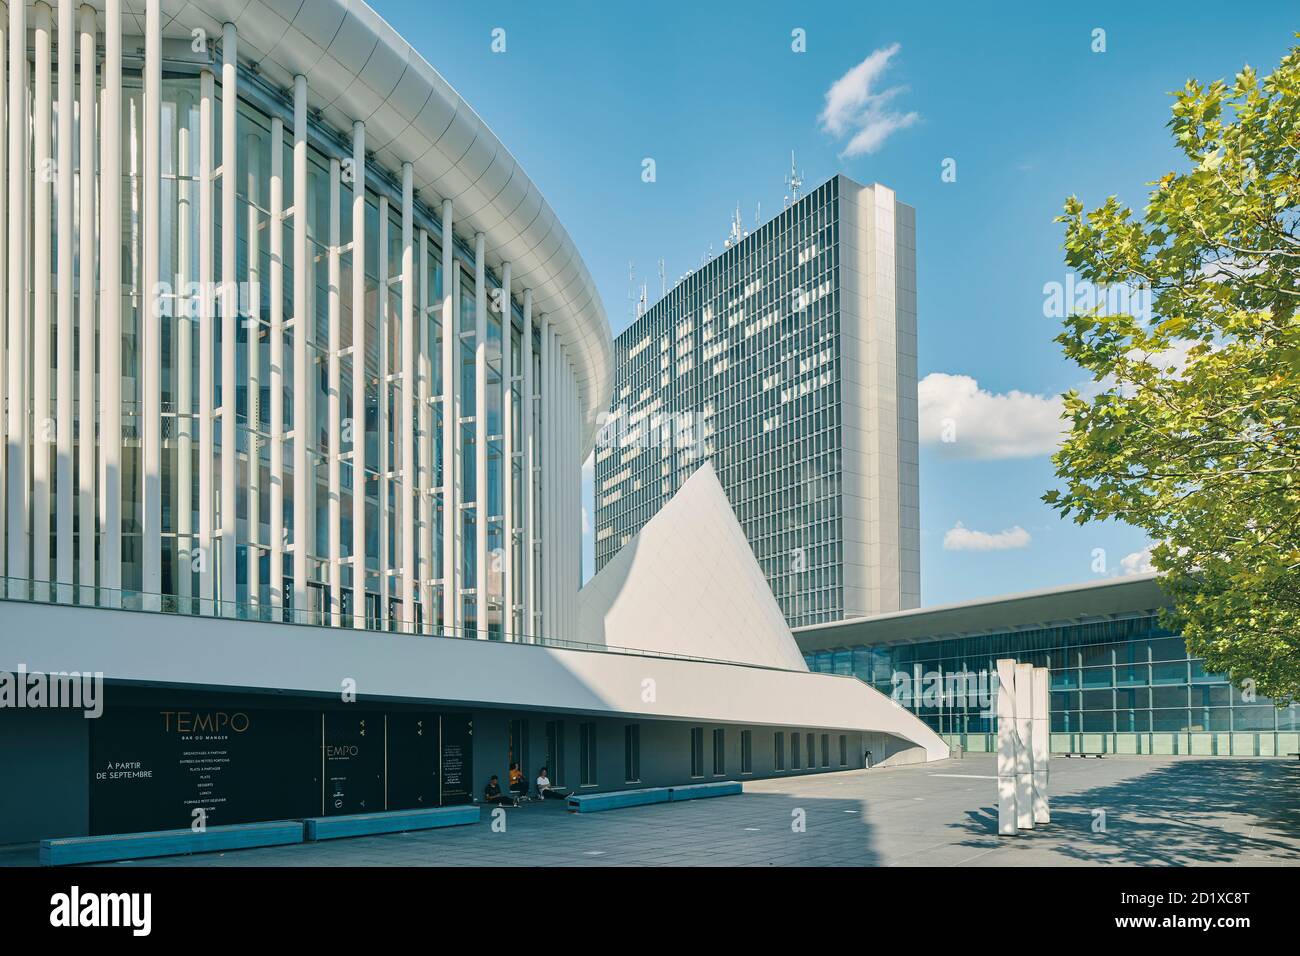 La Philharmonie du plateau de Kirchberg, au Luxembourg, est située au centre d'une place triangulaire entourée de bureaux administratifs de l'UE. Il est composé de 823 colonnes minces en acier blanc, disposées en trois ou quatre rangées. Terminé en 2005. Banque D'Images